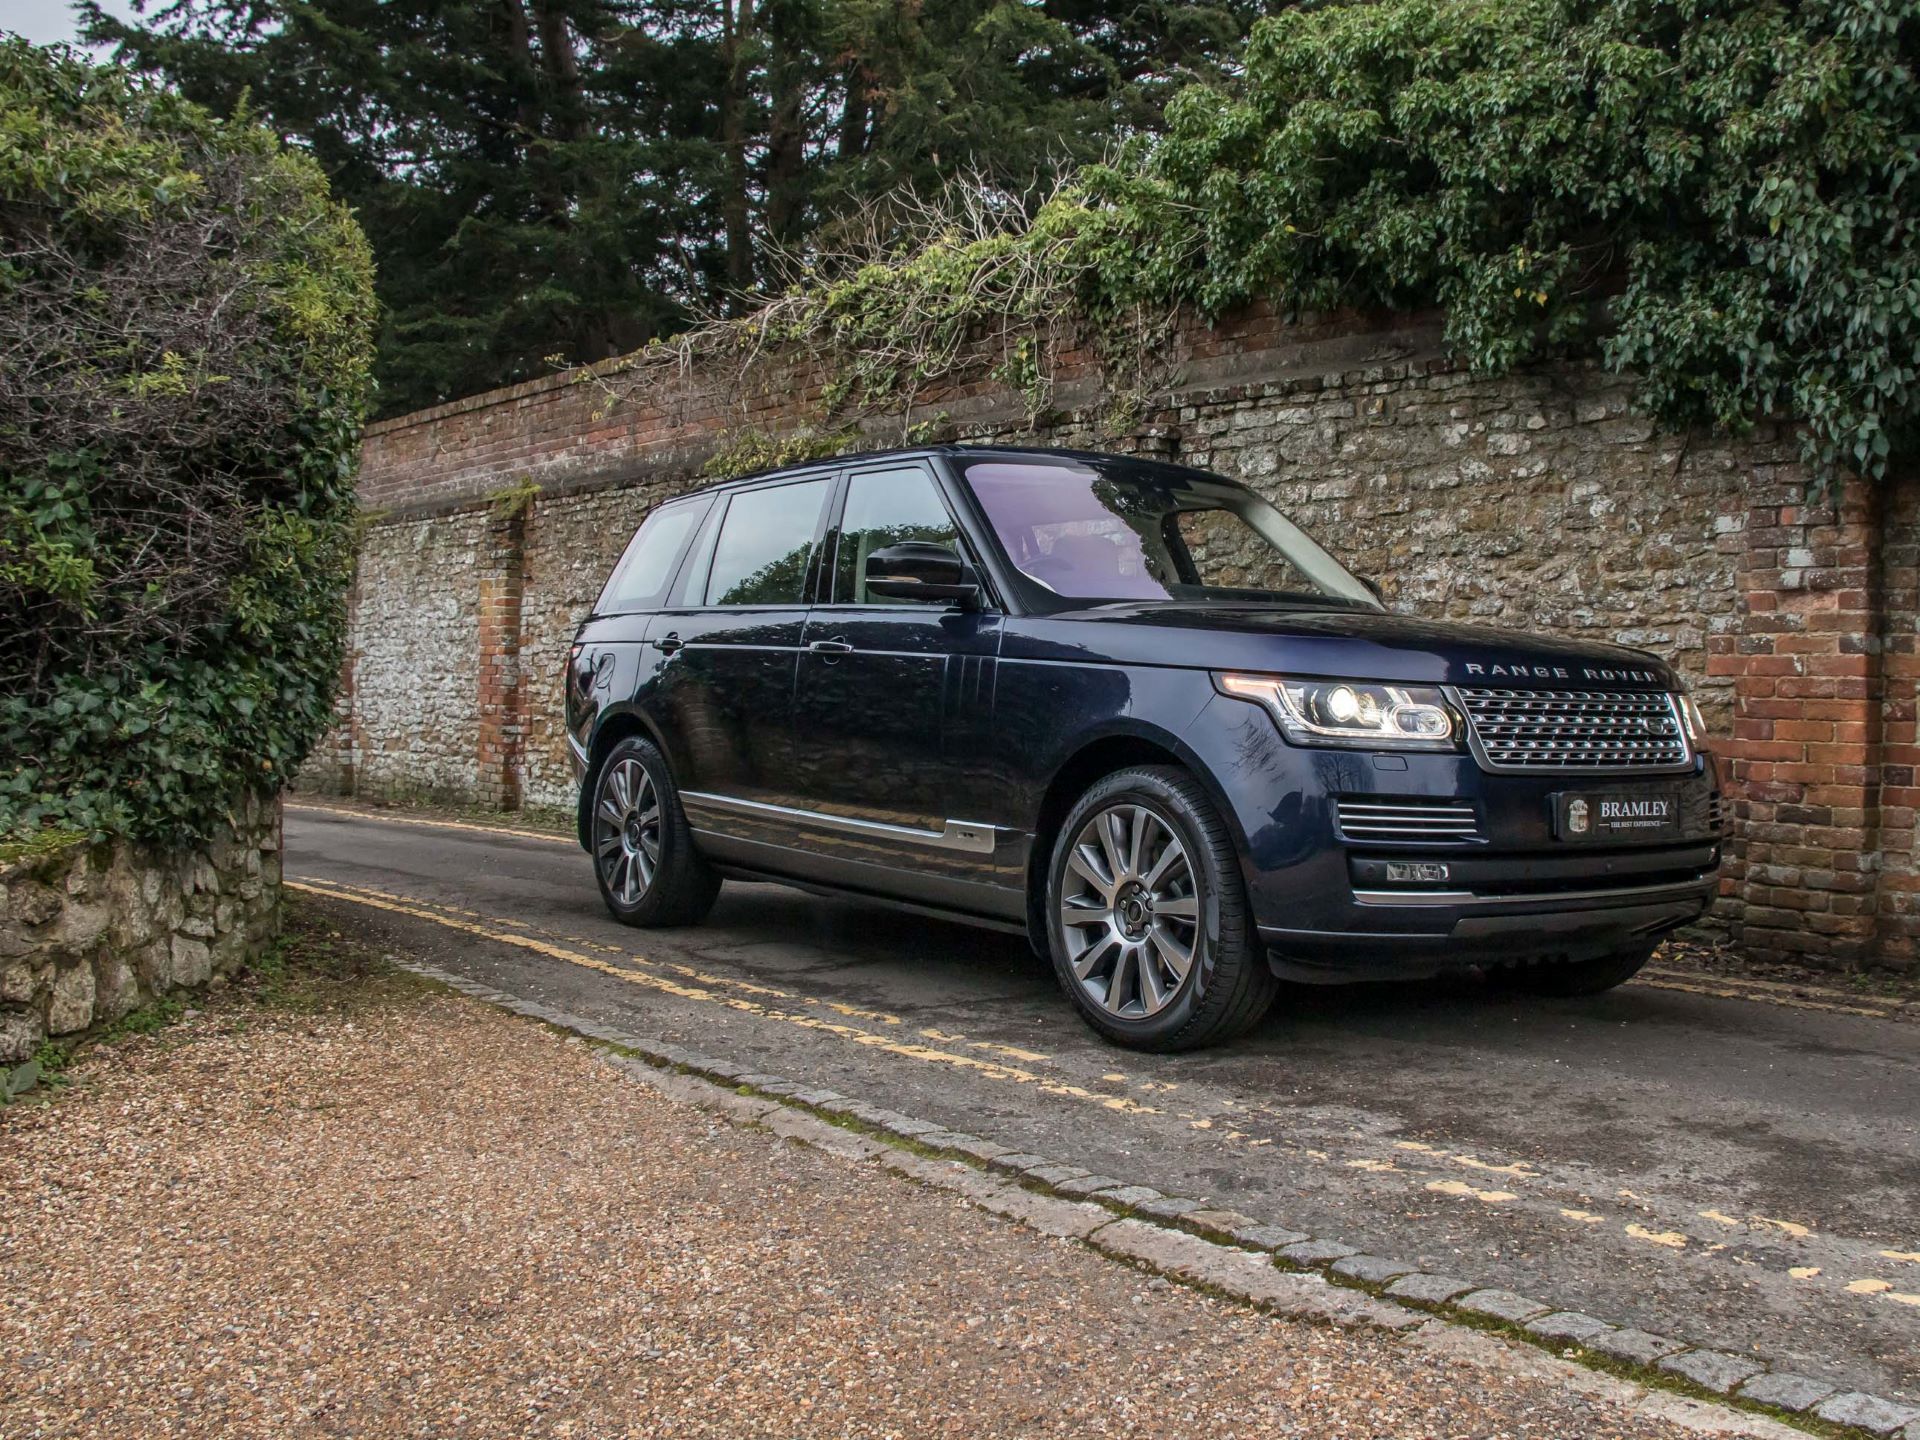 Queen Elizabeth II’s Range Rover on sale for £224,850